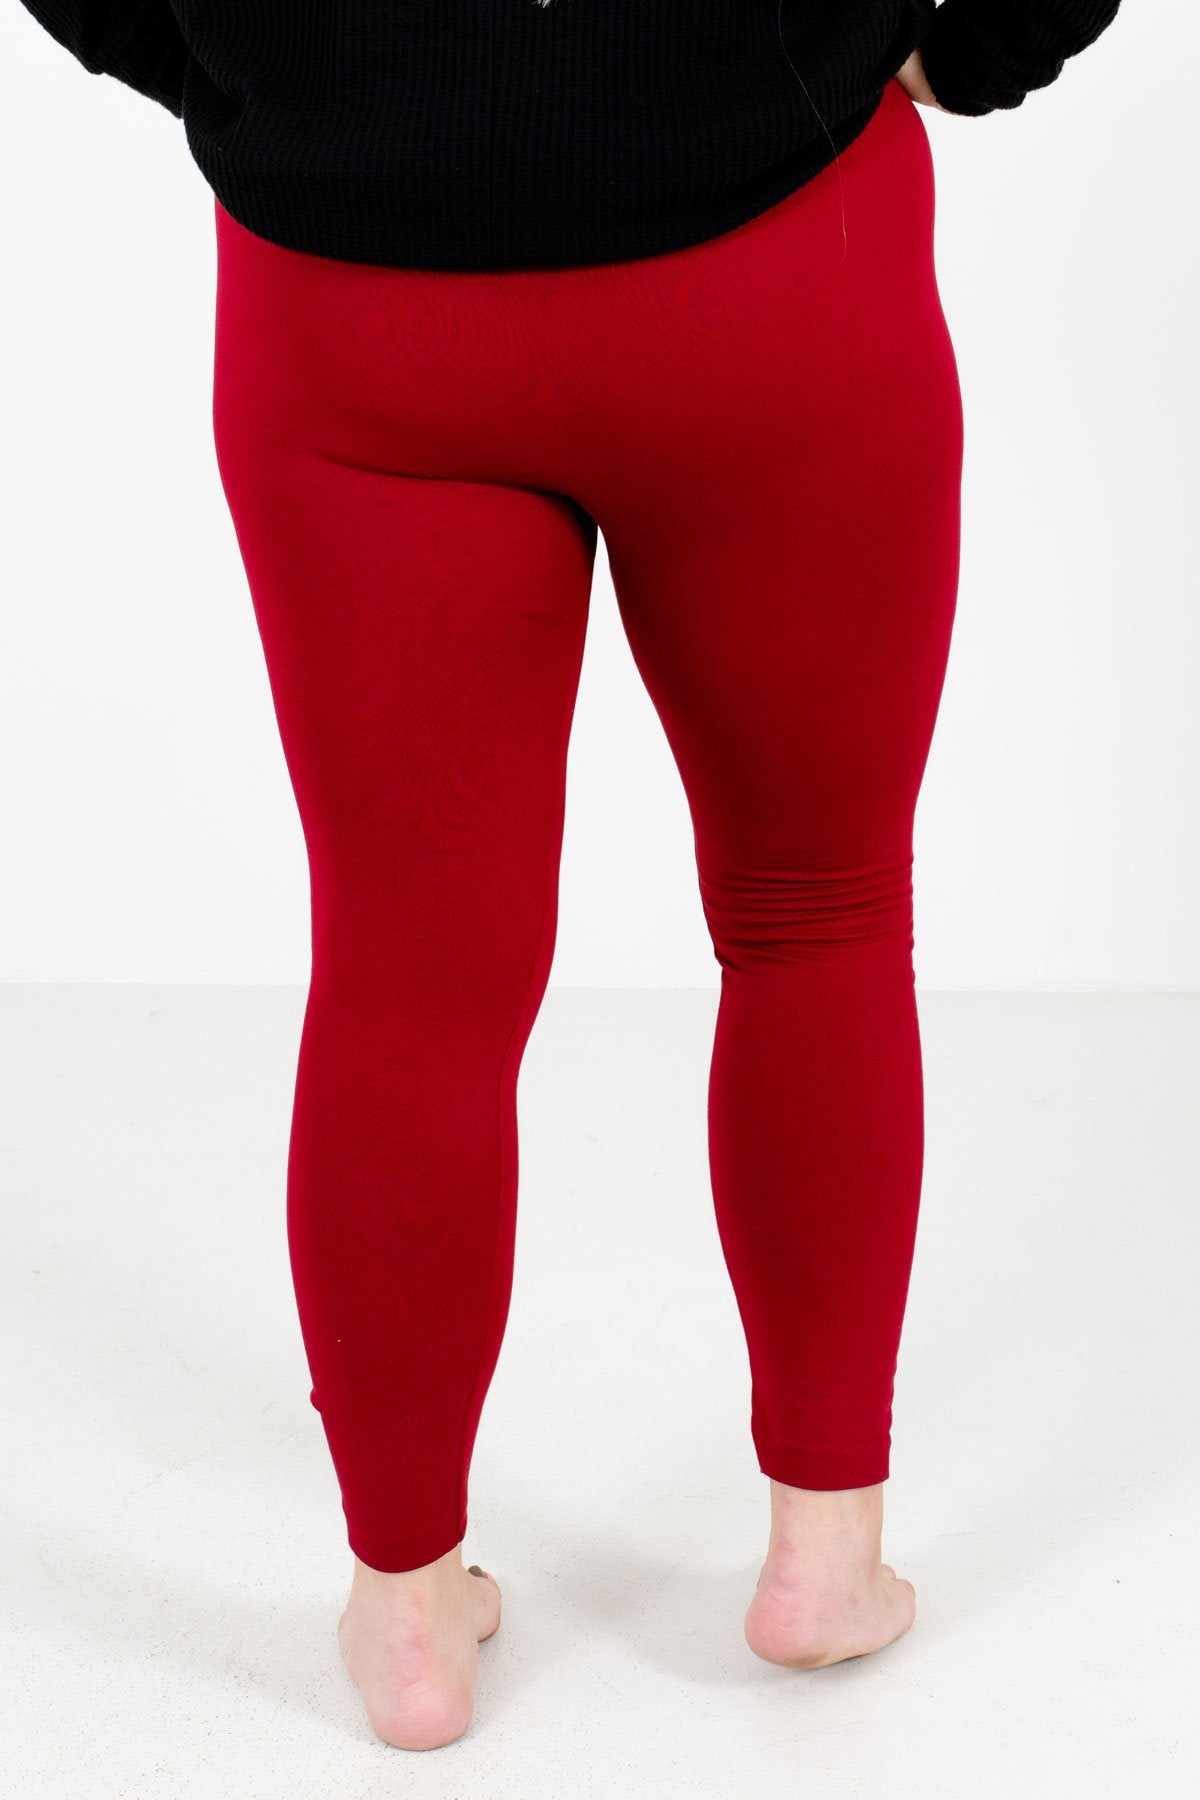 Leggings - Women's Solid Color Full Length Fleece Winter Leggings Plus Size